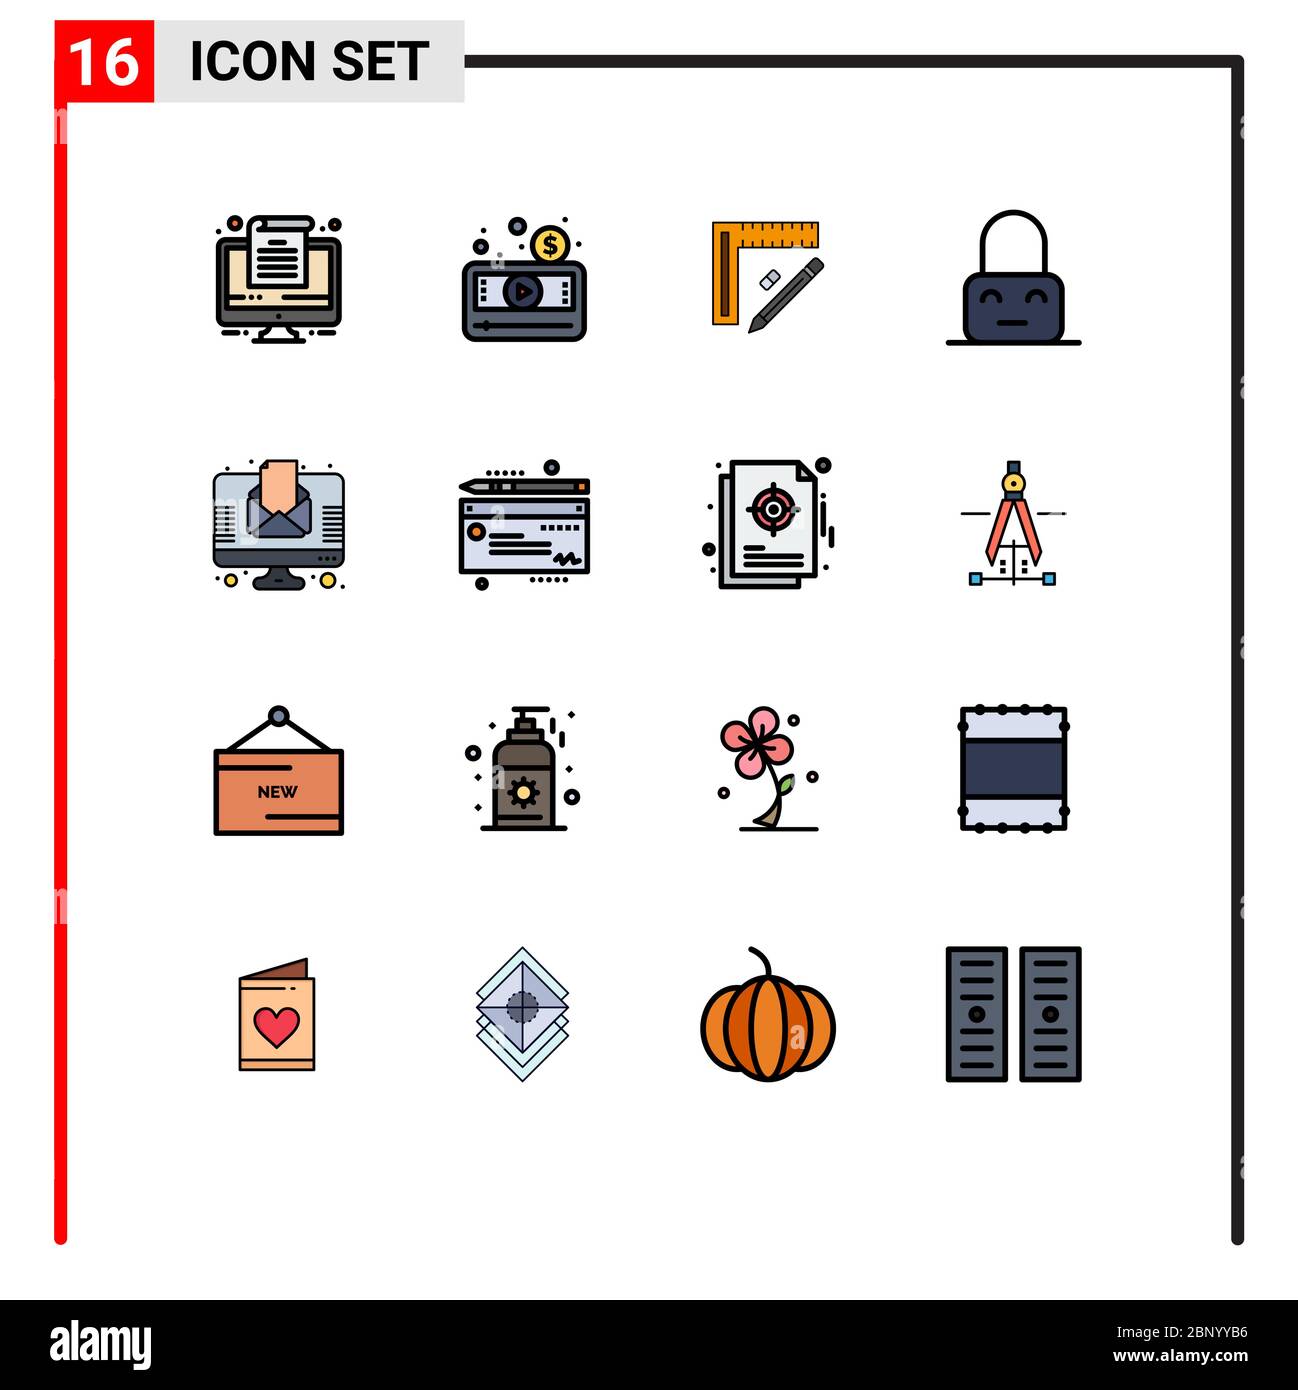 Set di 16 icone moderne dell'interfaccia utente simboli per lettere, ON, righello, blocco, design elementi di disegno editabili Creative Vector Illustrazione Vettoriale